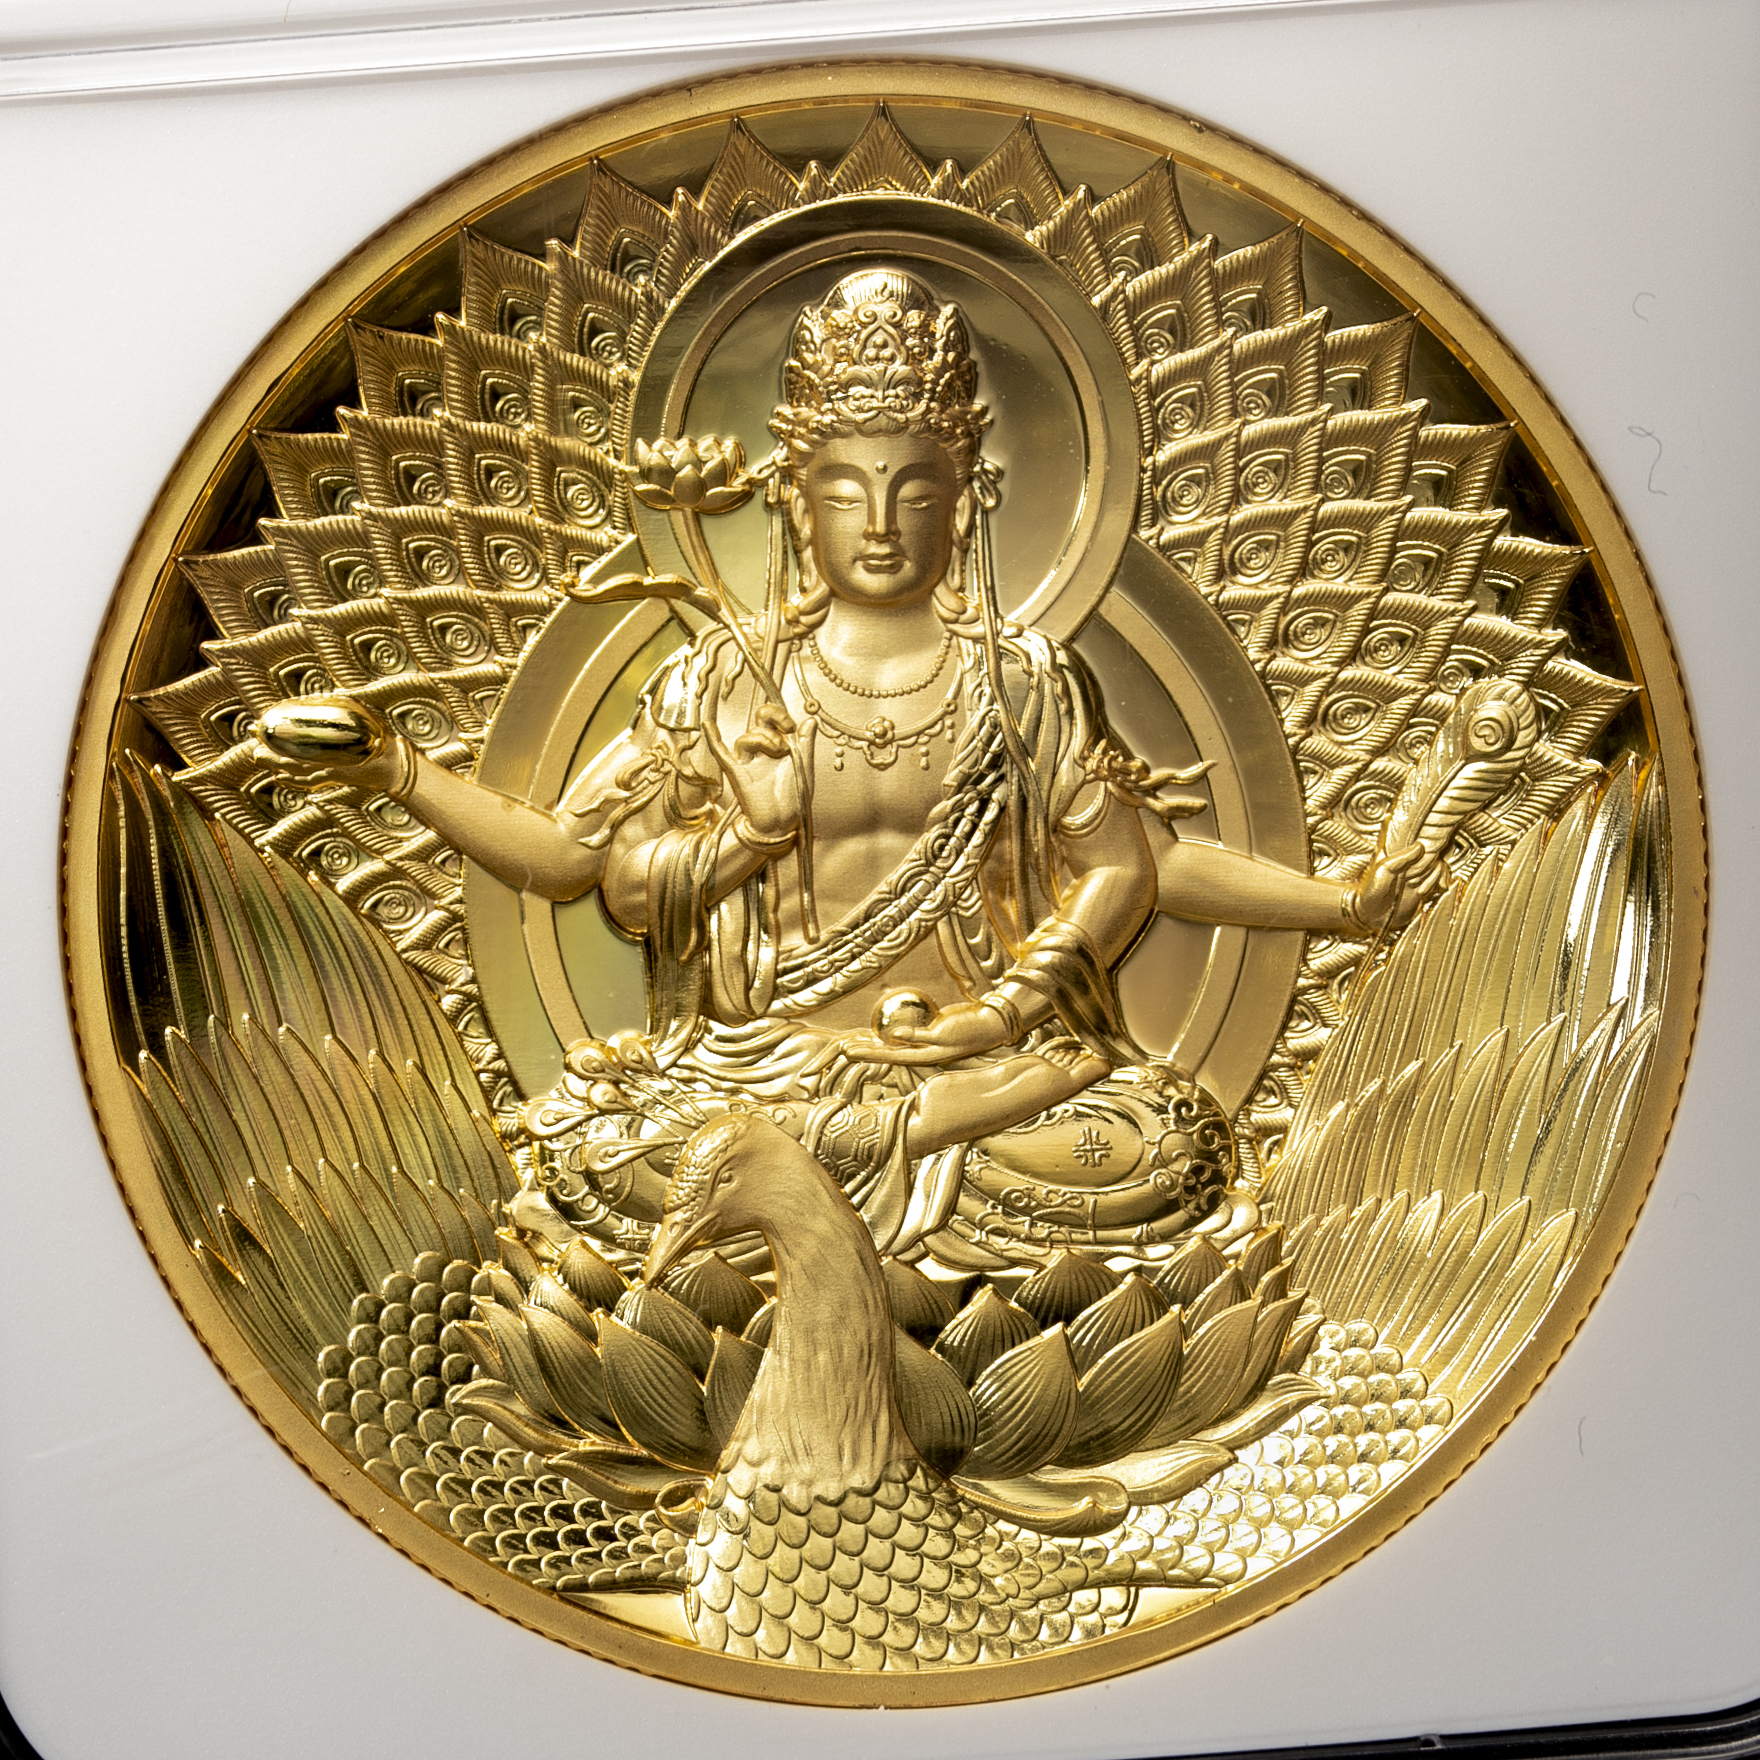 嘉日の小物とアンティークコイン【NGC-PF70 Ultra Cameo】仏教像 金 